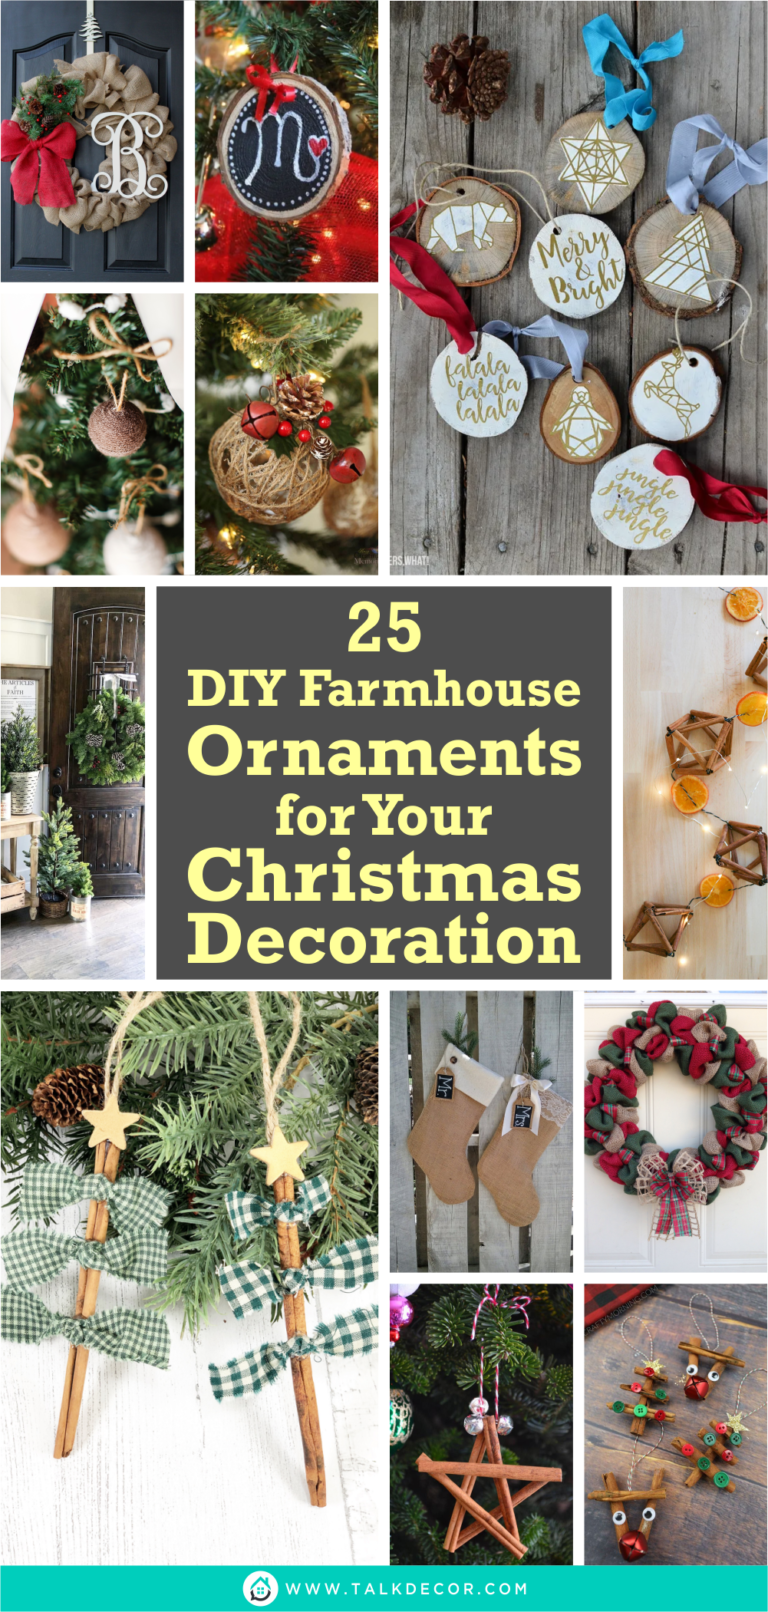 25 DIY Farmhouse Ornaments for Your Christmas Decoration - Talkdecor